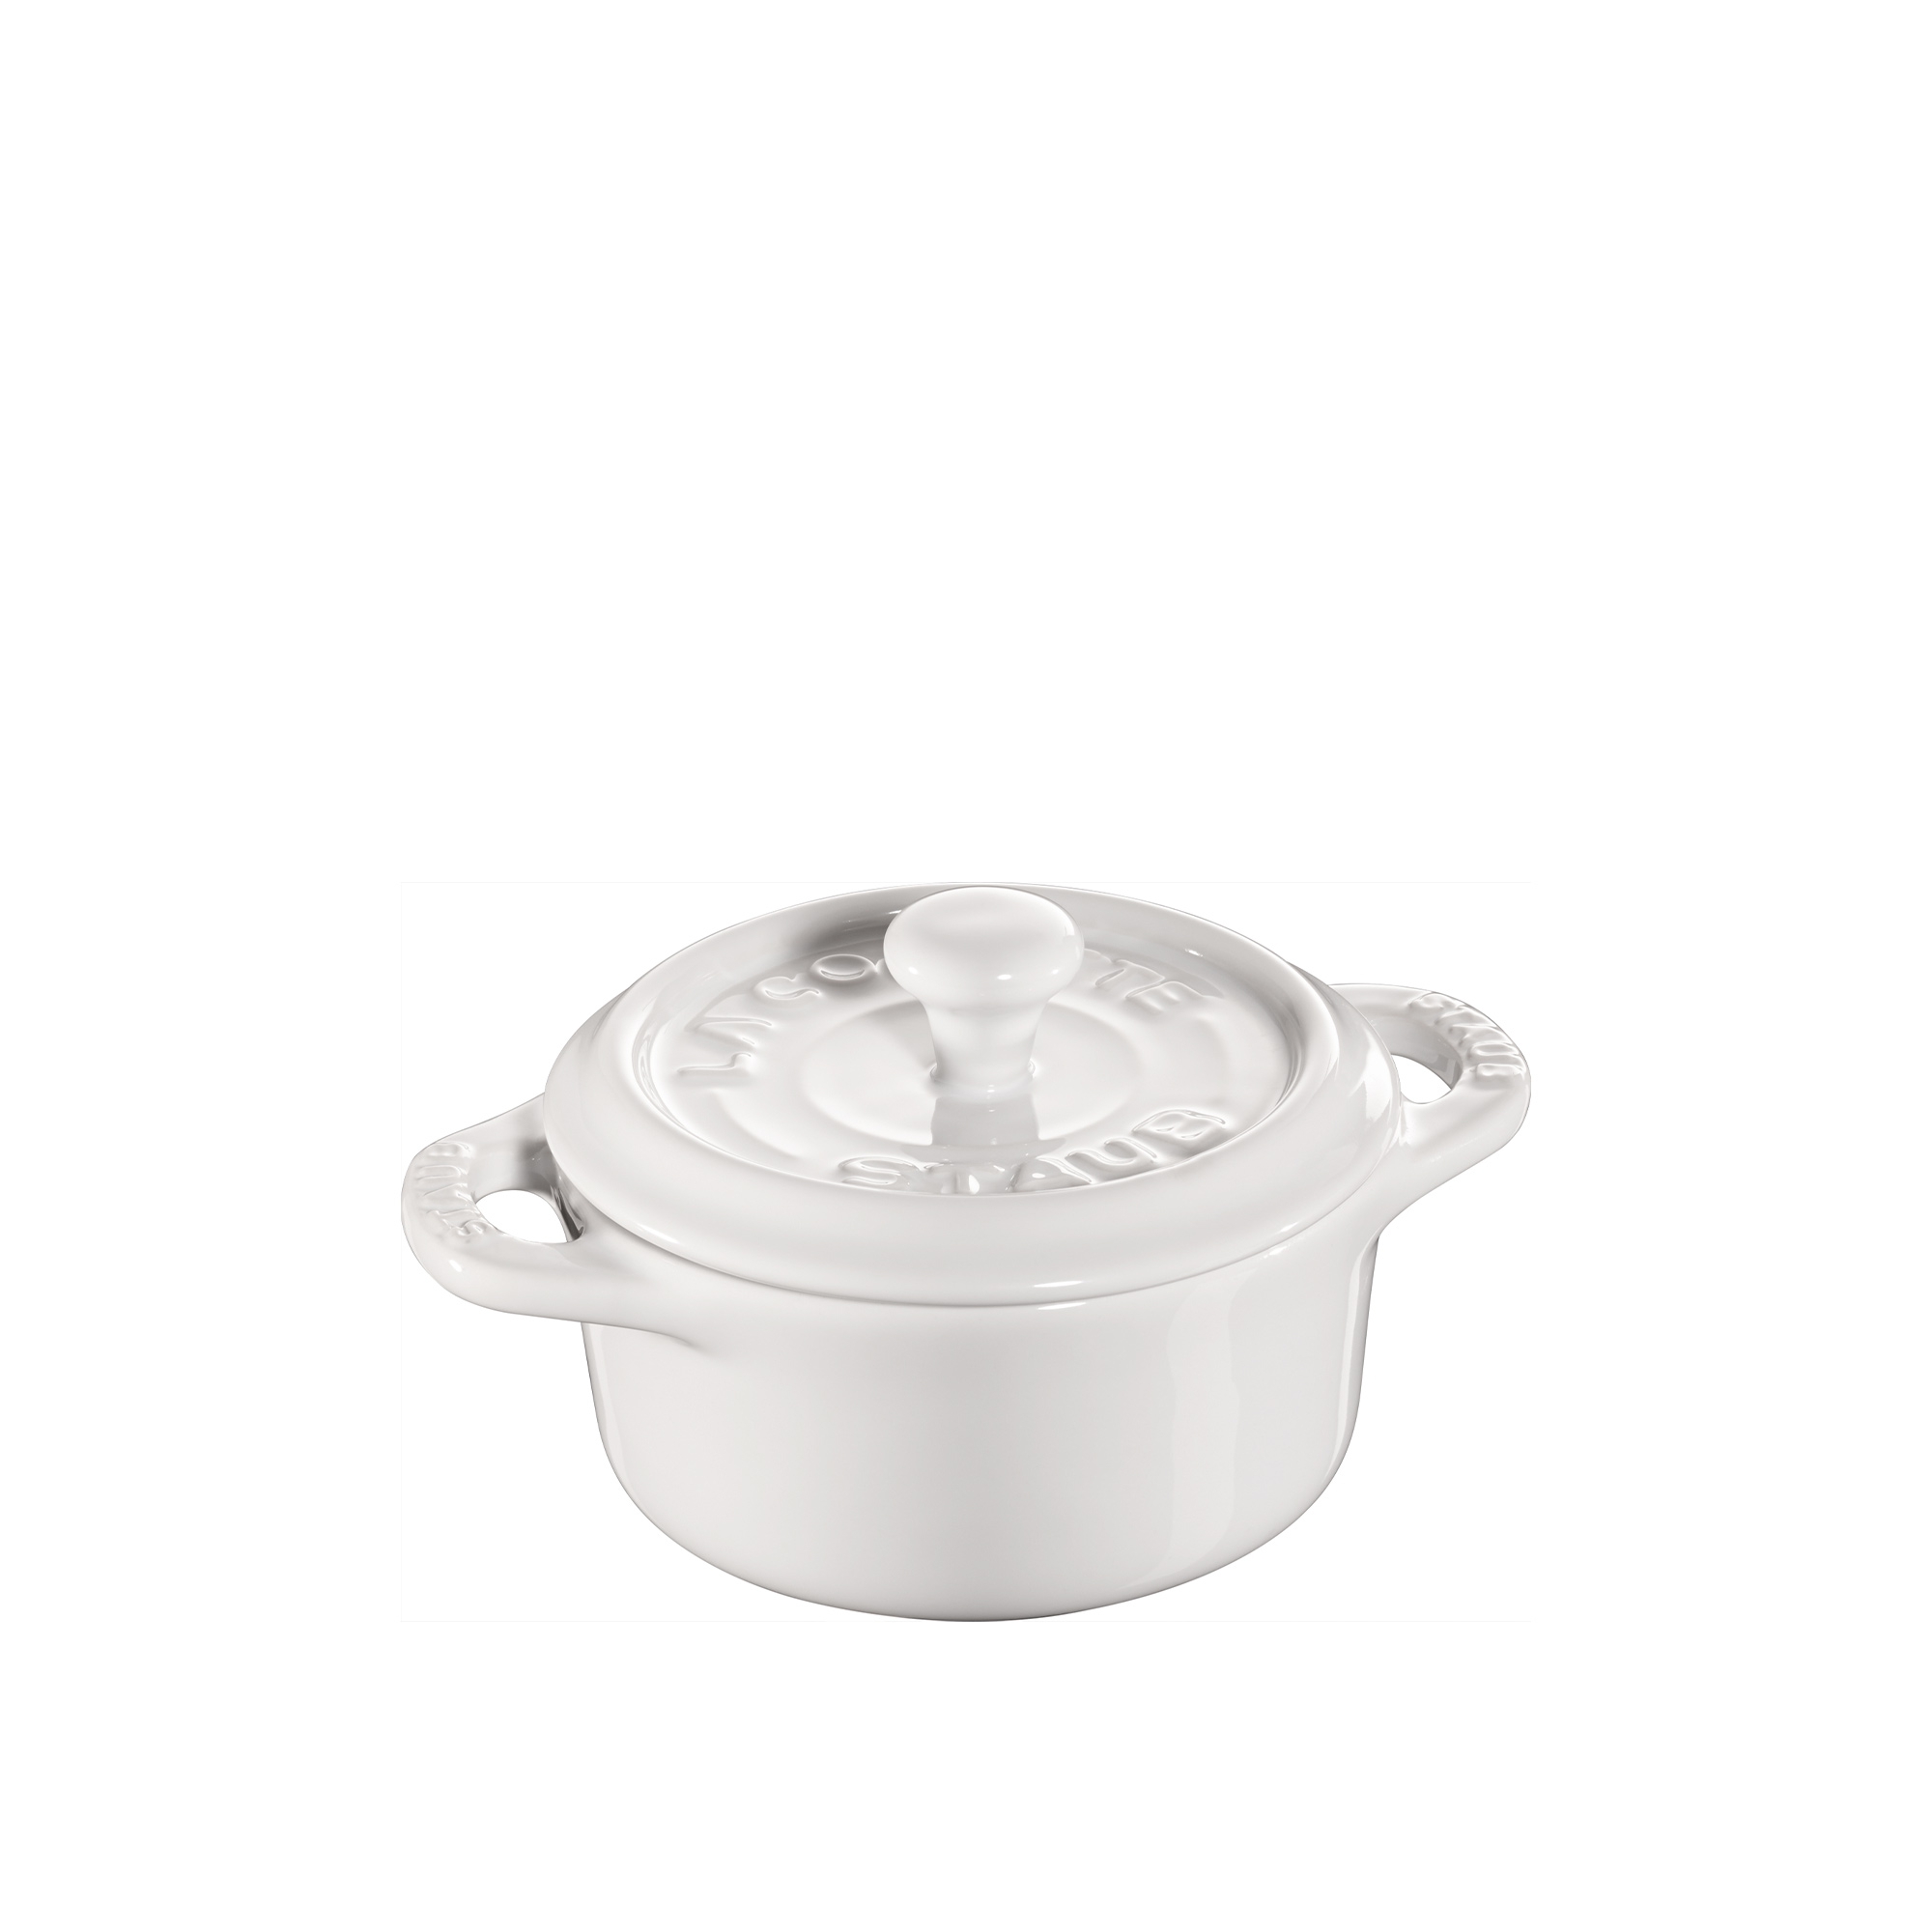 Staub - round Mini Cocotte, 10 cm - Pure white